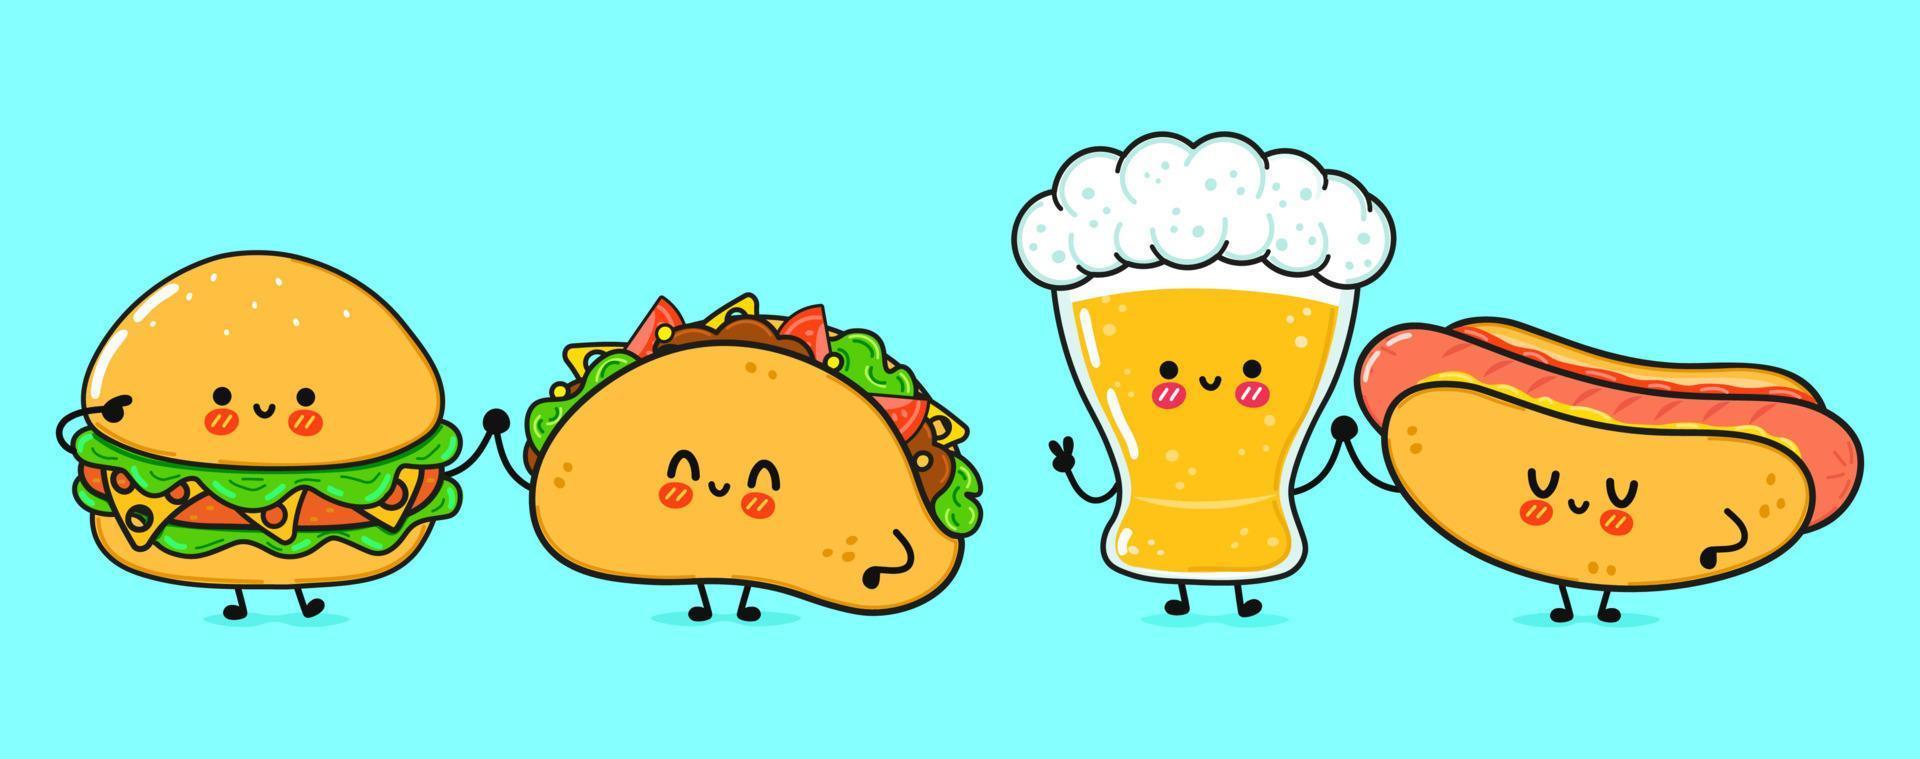 süßes, lustiges fröhliches glas bier, hot dog, hamburger, taco. Vektor handgezeichnete kawaii Zeichentrickfiguren, Illustrationssymbol. lustiges karikaturglas bier, hotdog, hamburger, taco-maskottchen-freundkonzept